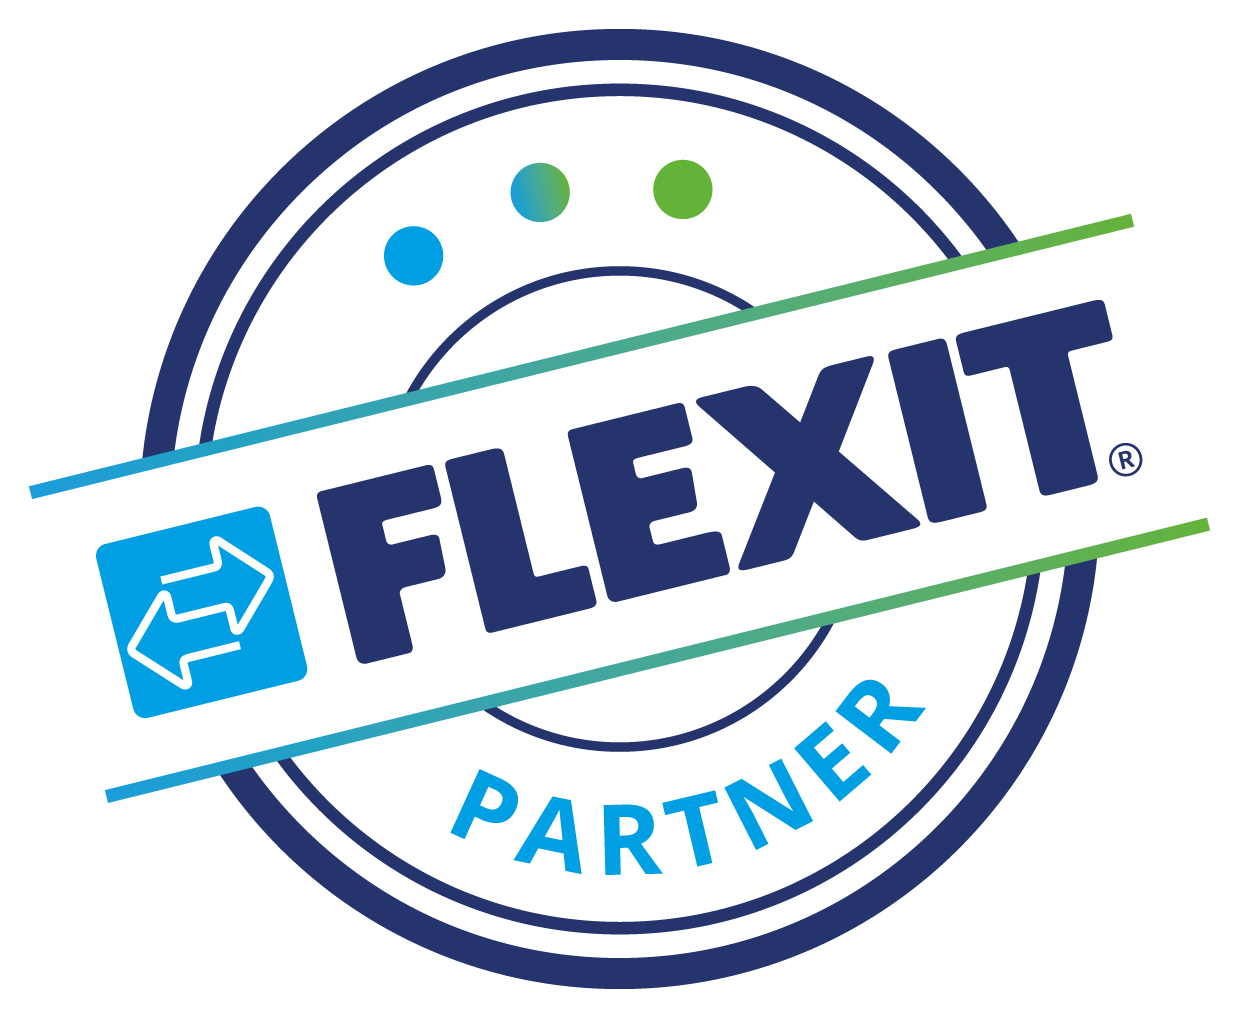 flexit partner logo rgb